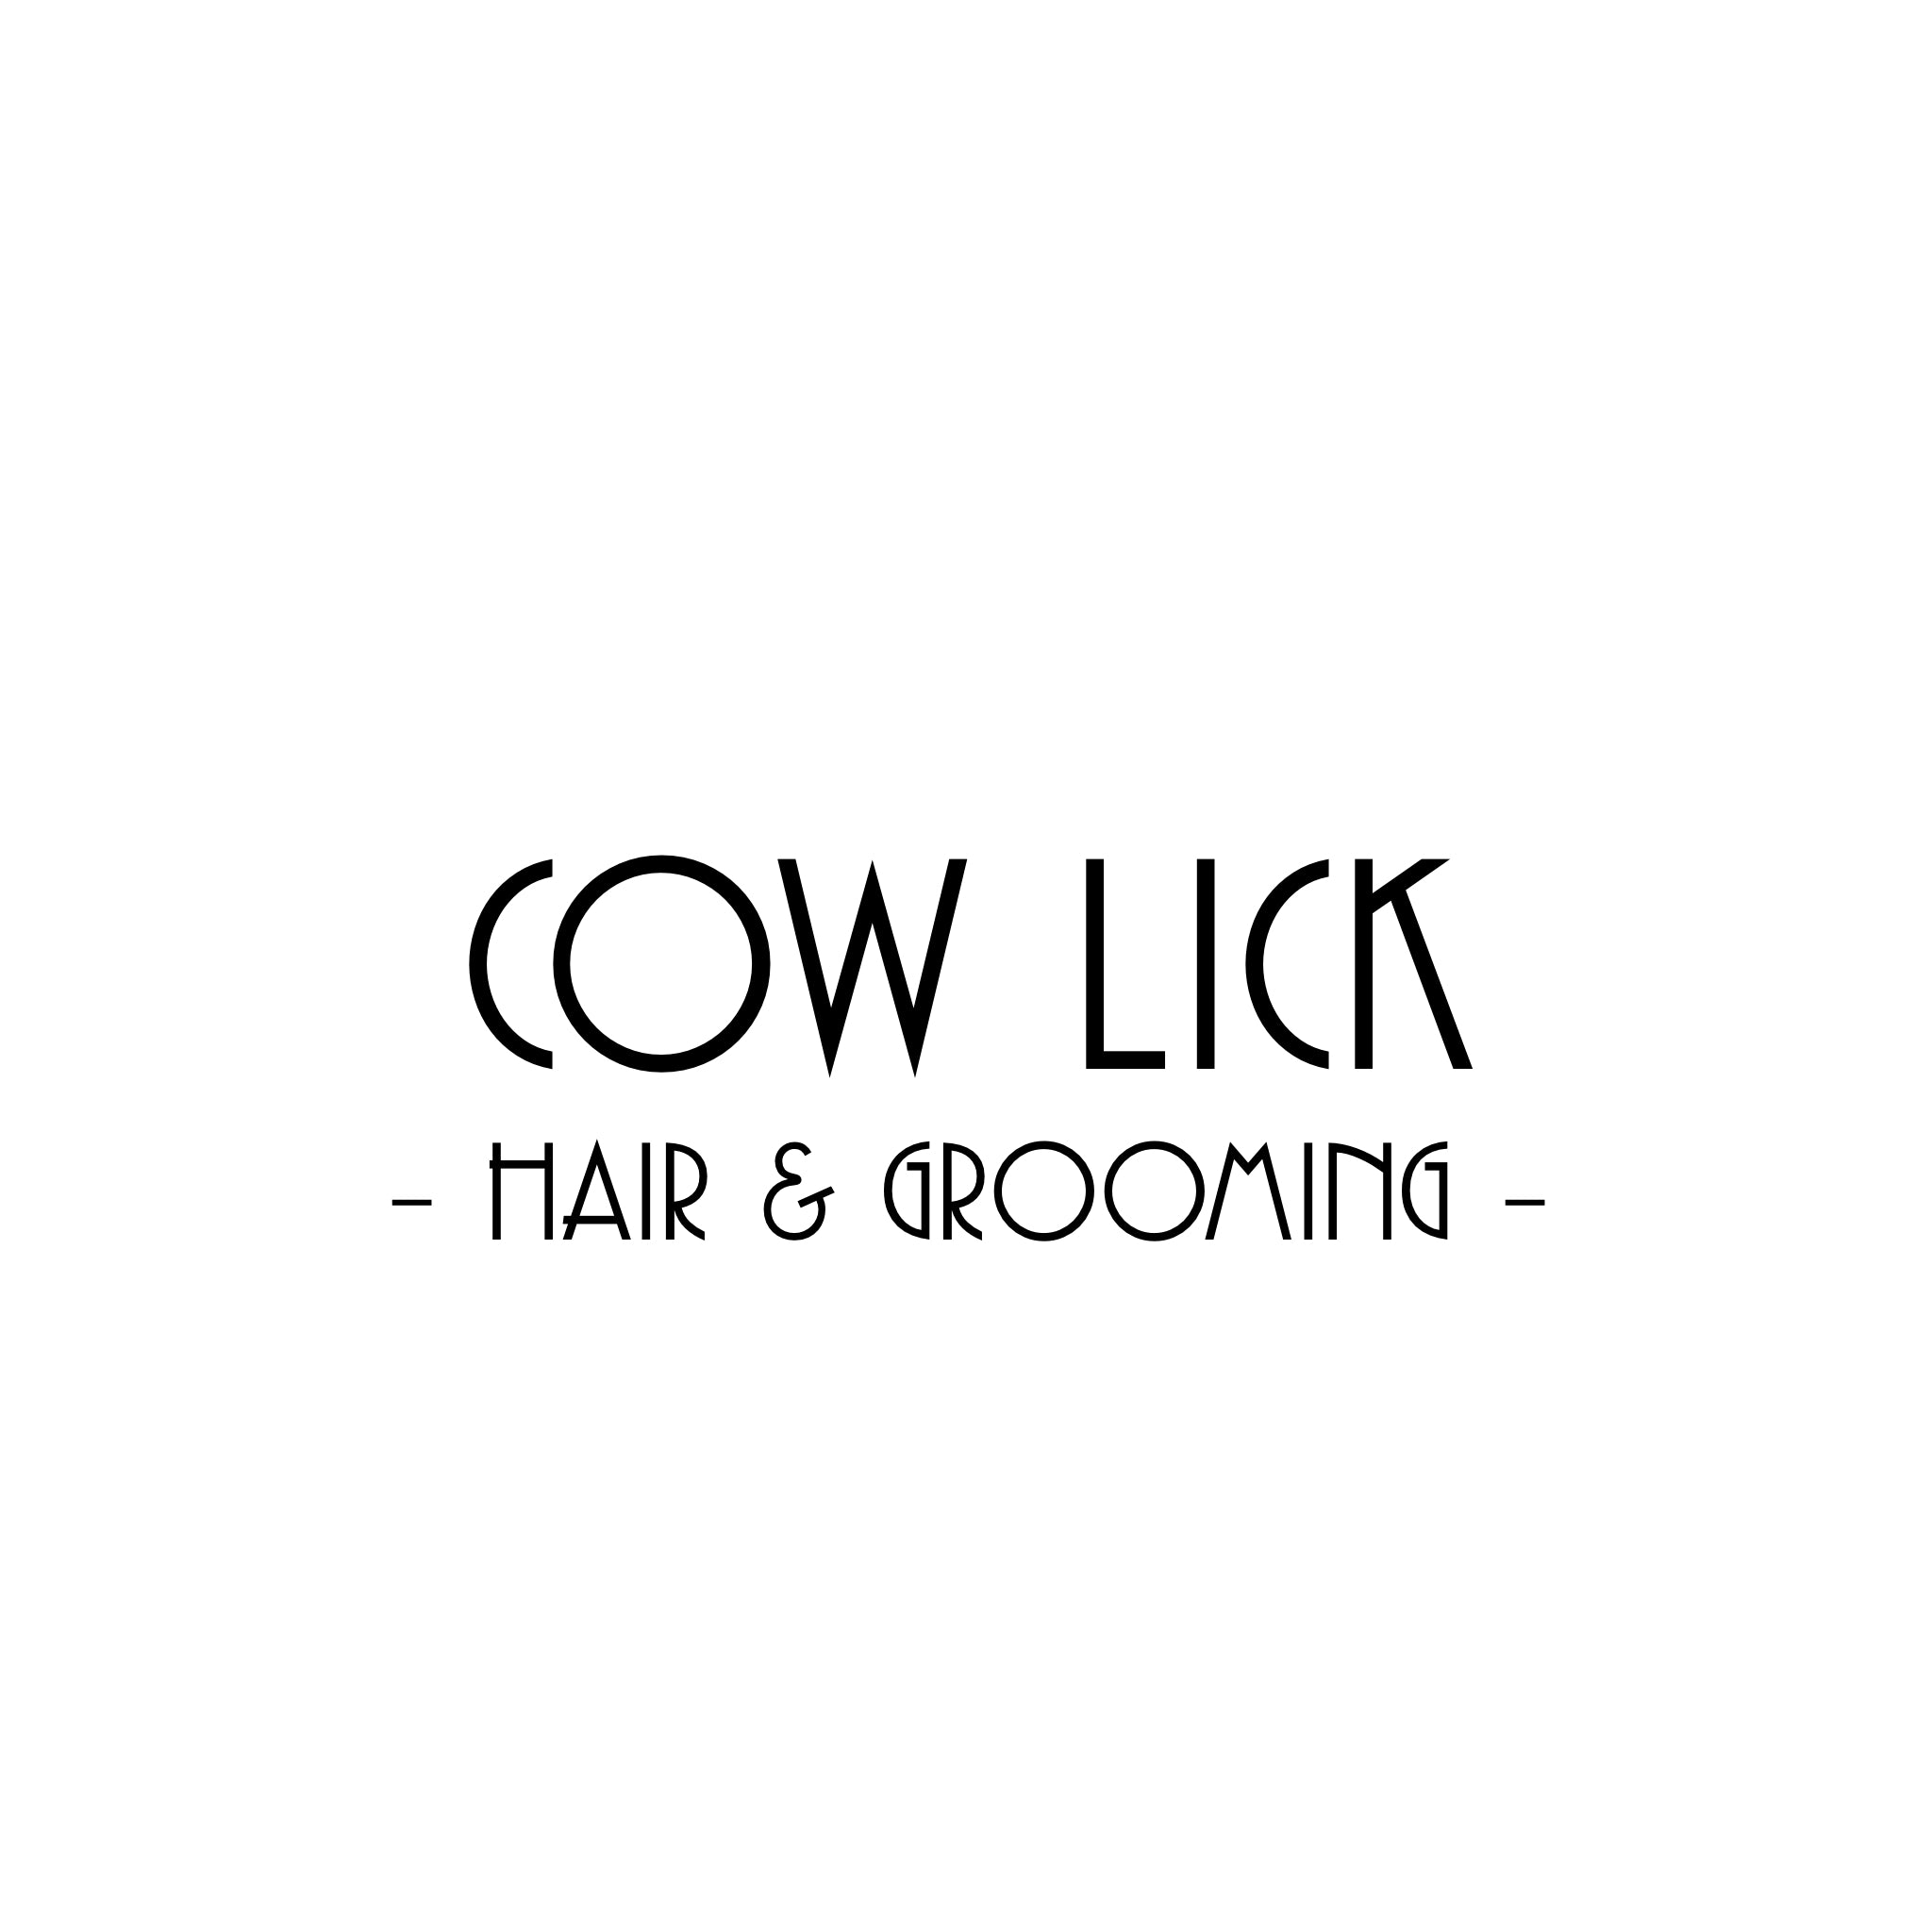 Cow lick - hair & grooming